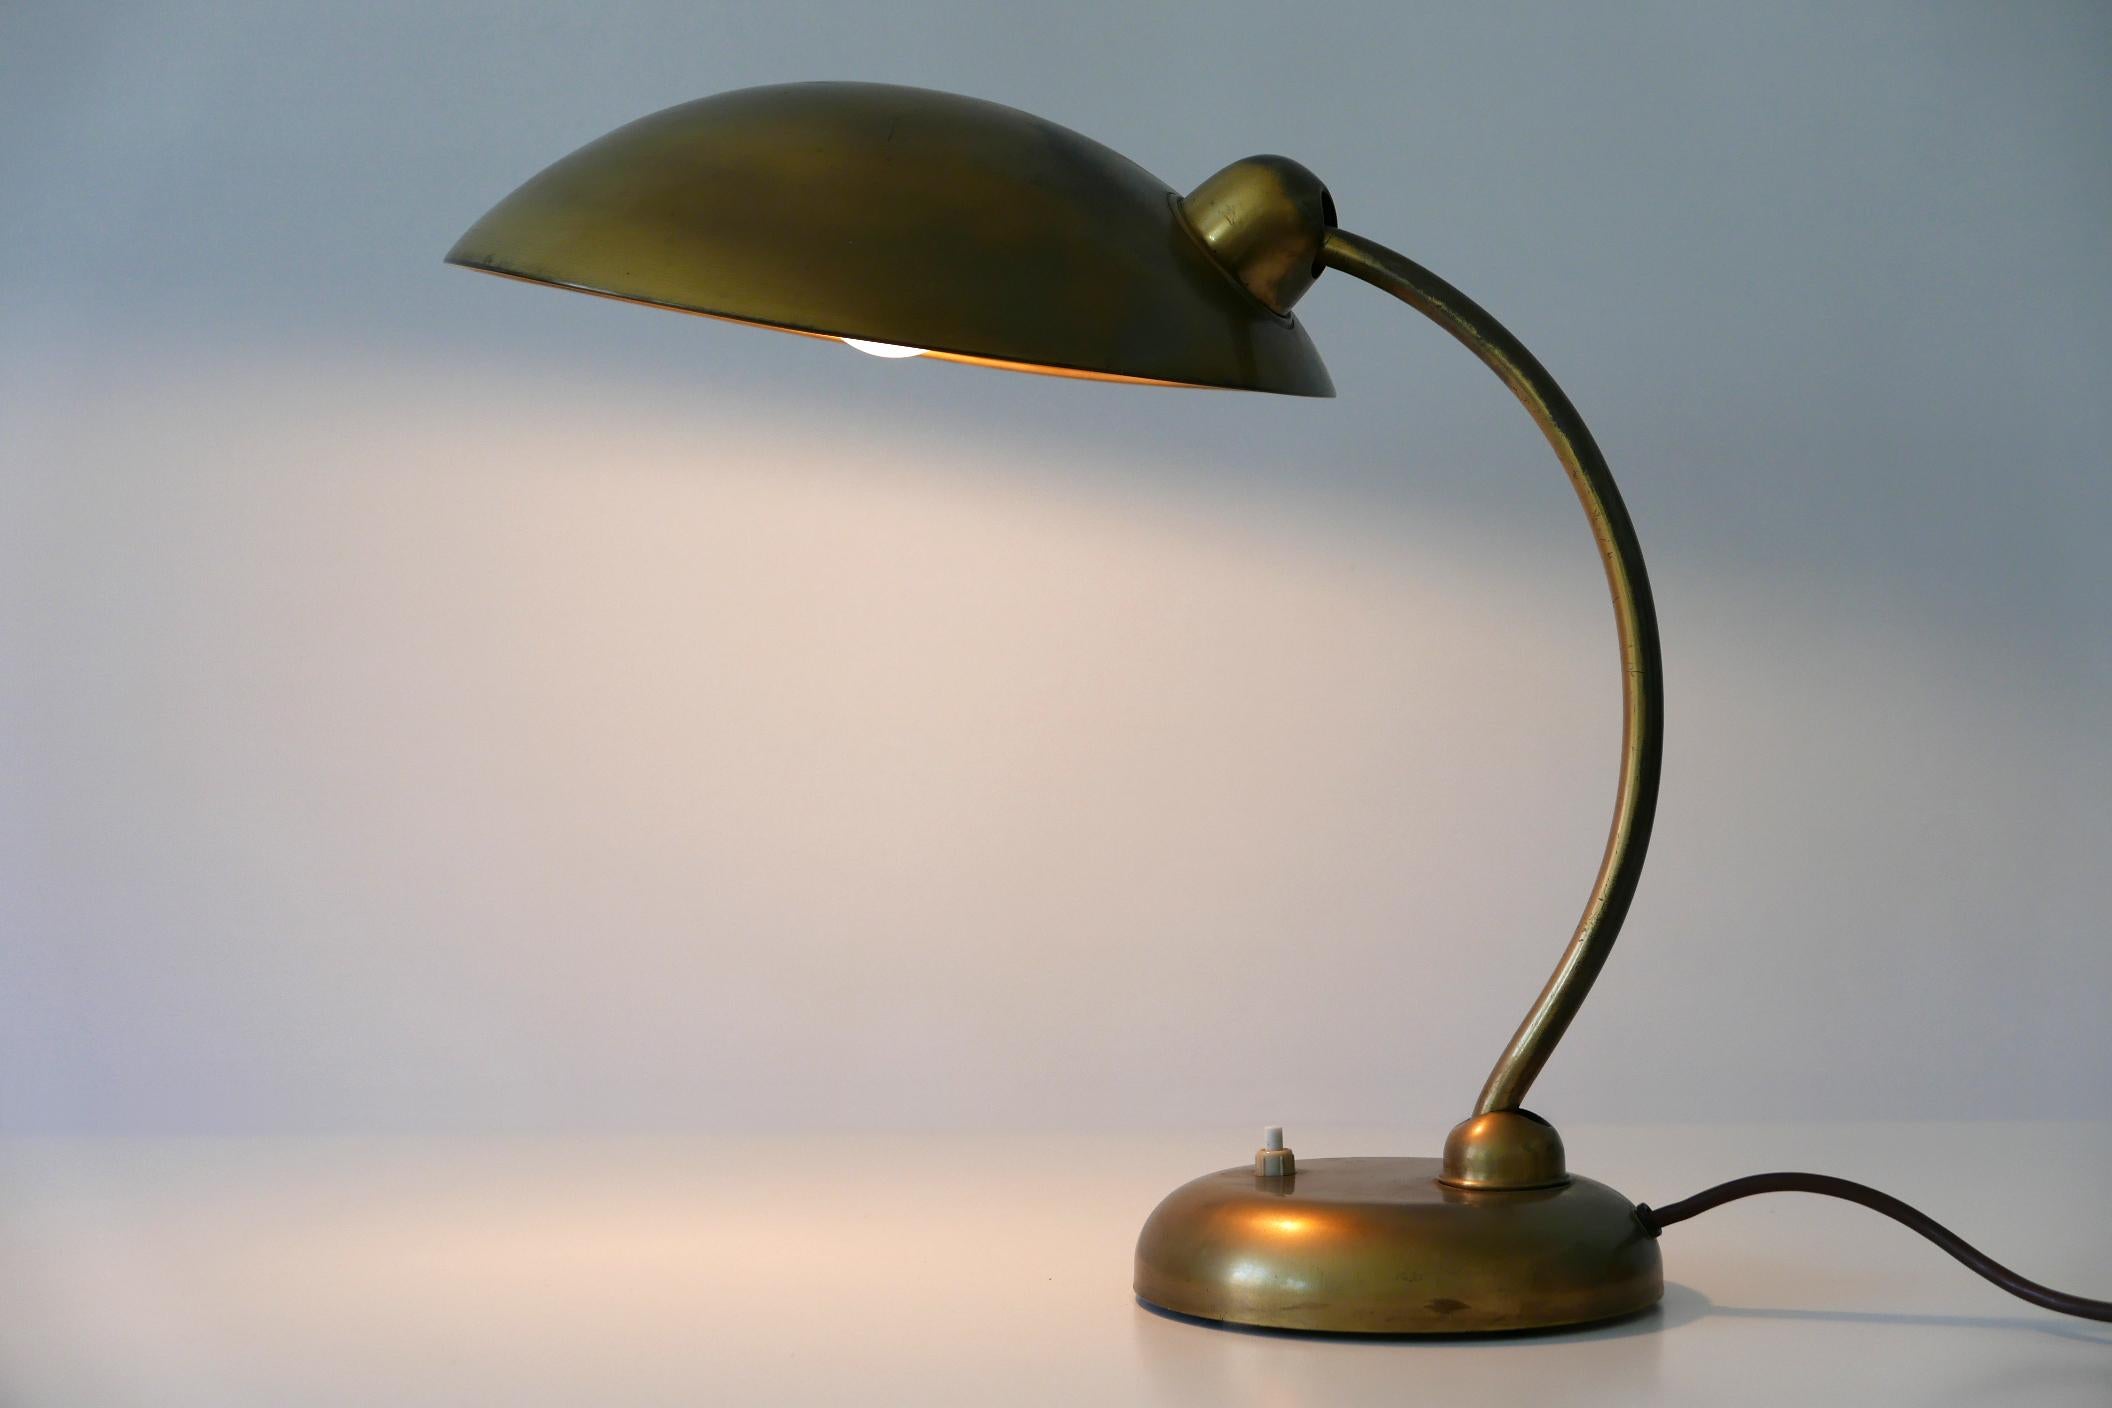 Seltene und elegante Mid-Century Modern Schreibtischlampe oder Tischlampe. Entworfen und hergestellt in den 1950er Jahren, Deutschland.

Die aus Messing gefertigte Leuchte benötigt 1 x E27 Edison-Schraubbirne, ist verkabelt und in betriebsbereitem